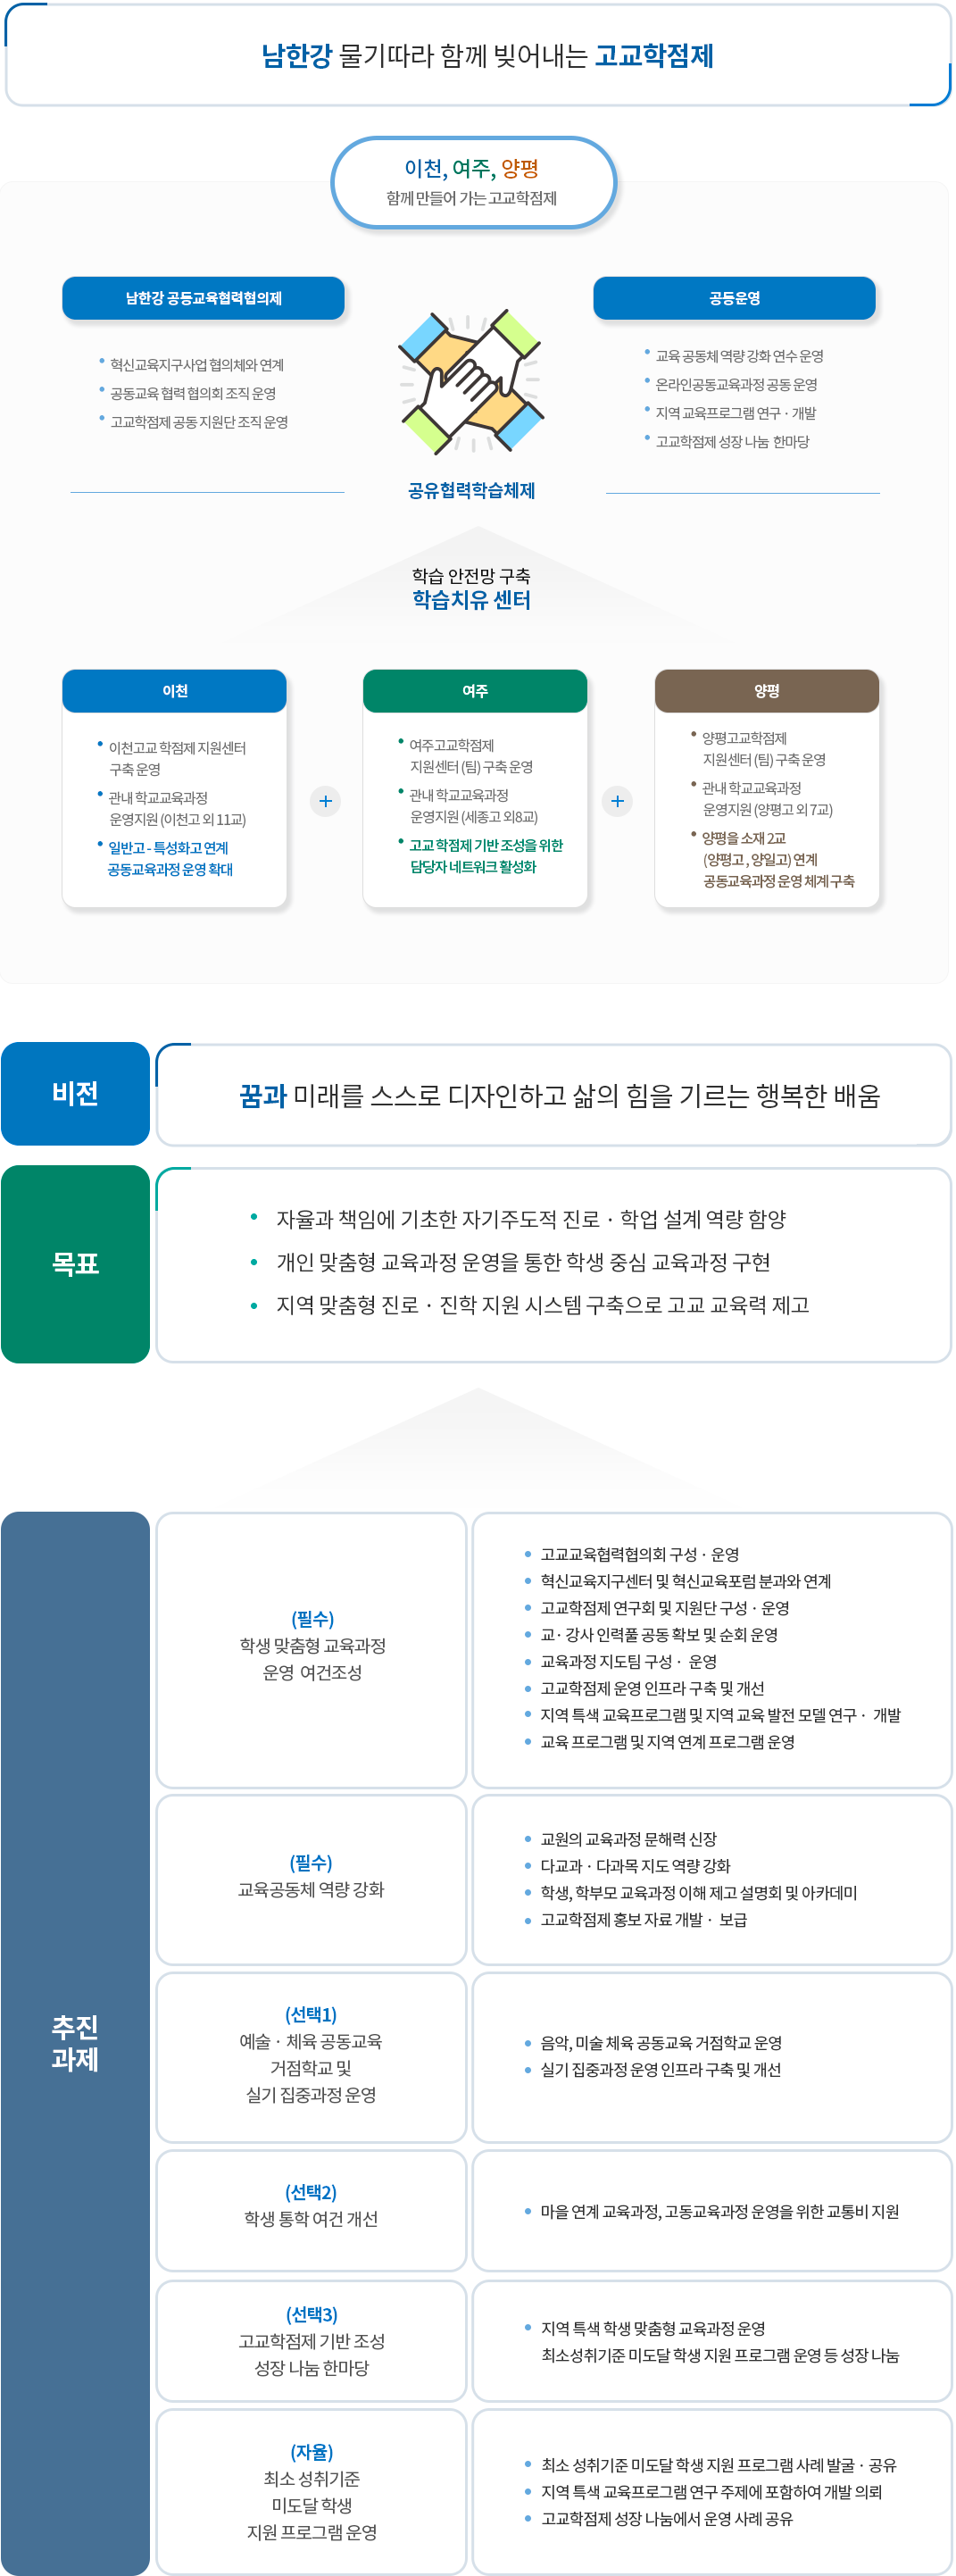 남한강 지구 운영과 비전 에 관련된 이미지입니다. 자세한 설명은 하단 참조